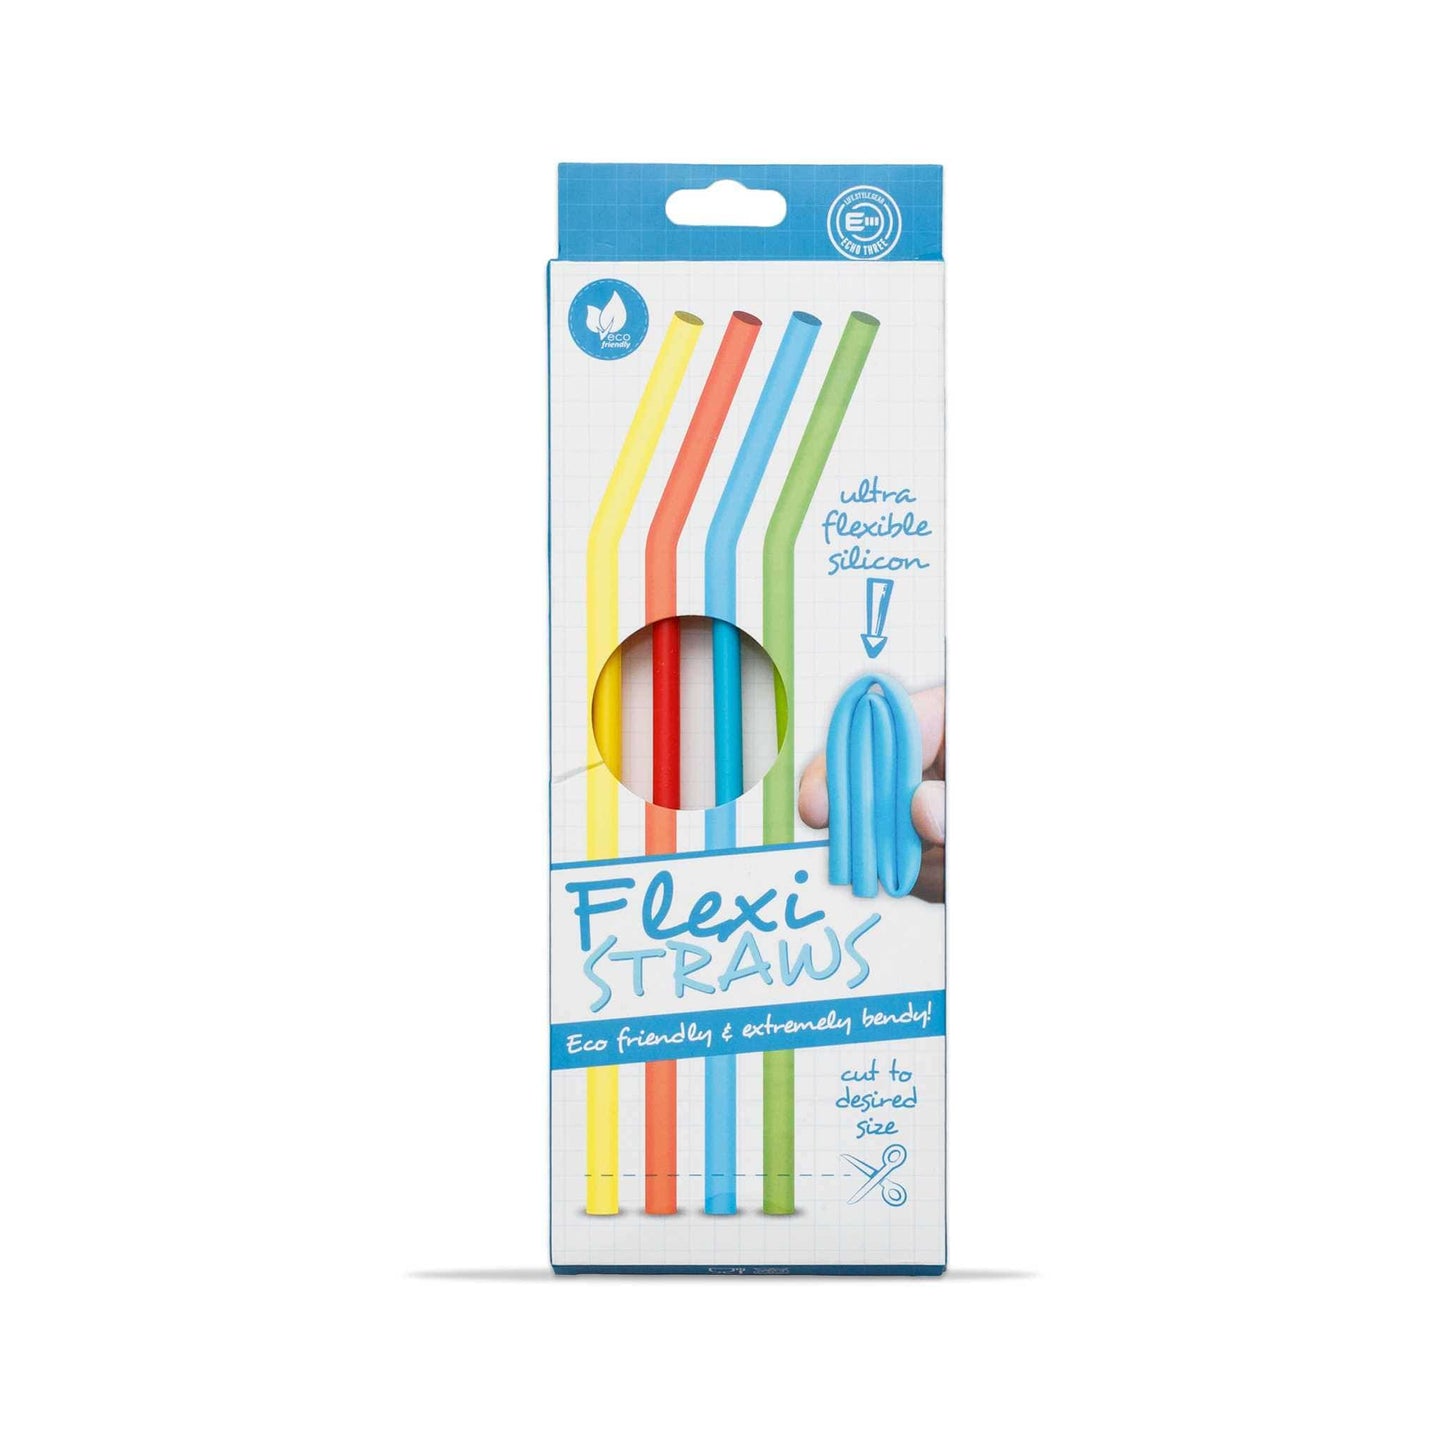 Echo Three Straws Silicone Flexi Straws | Eco Friendly Drinking Straws Set of 4 | Cut To Size Reusable Straws